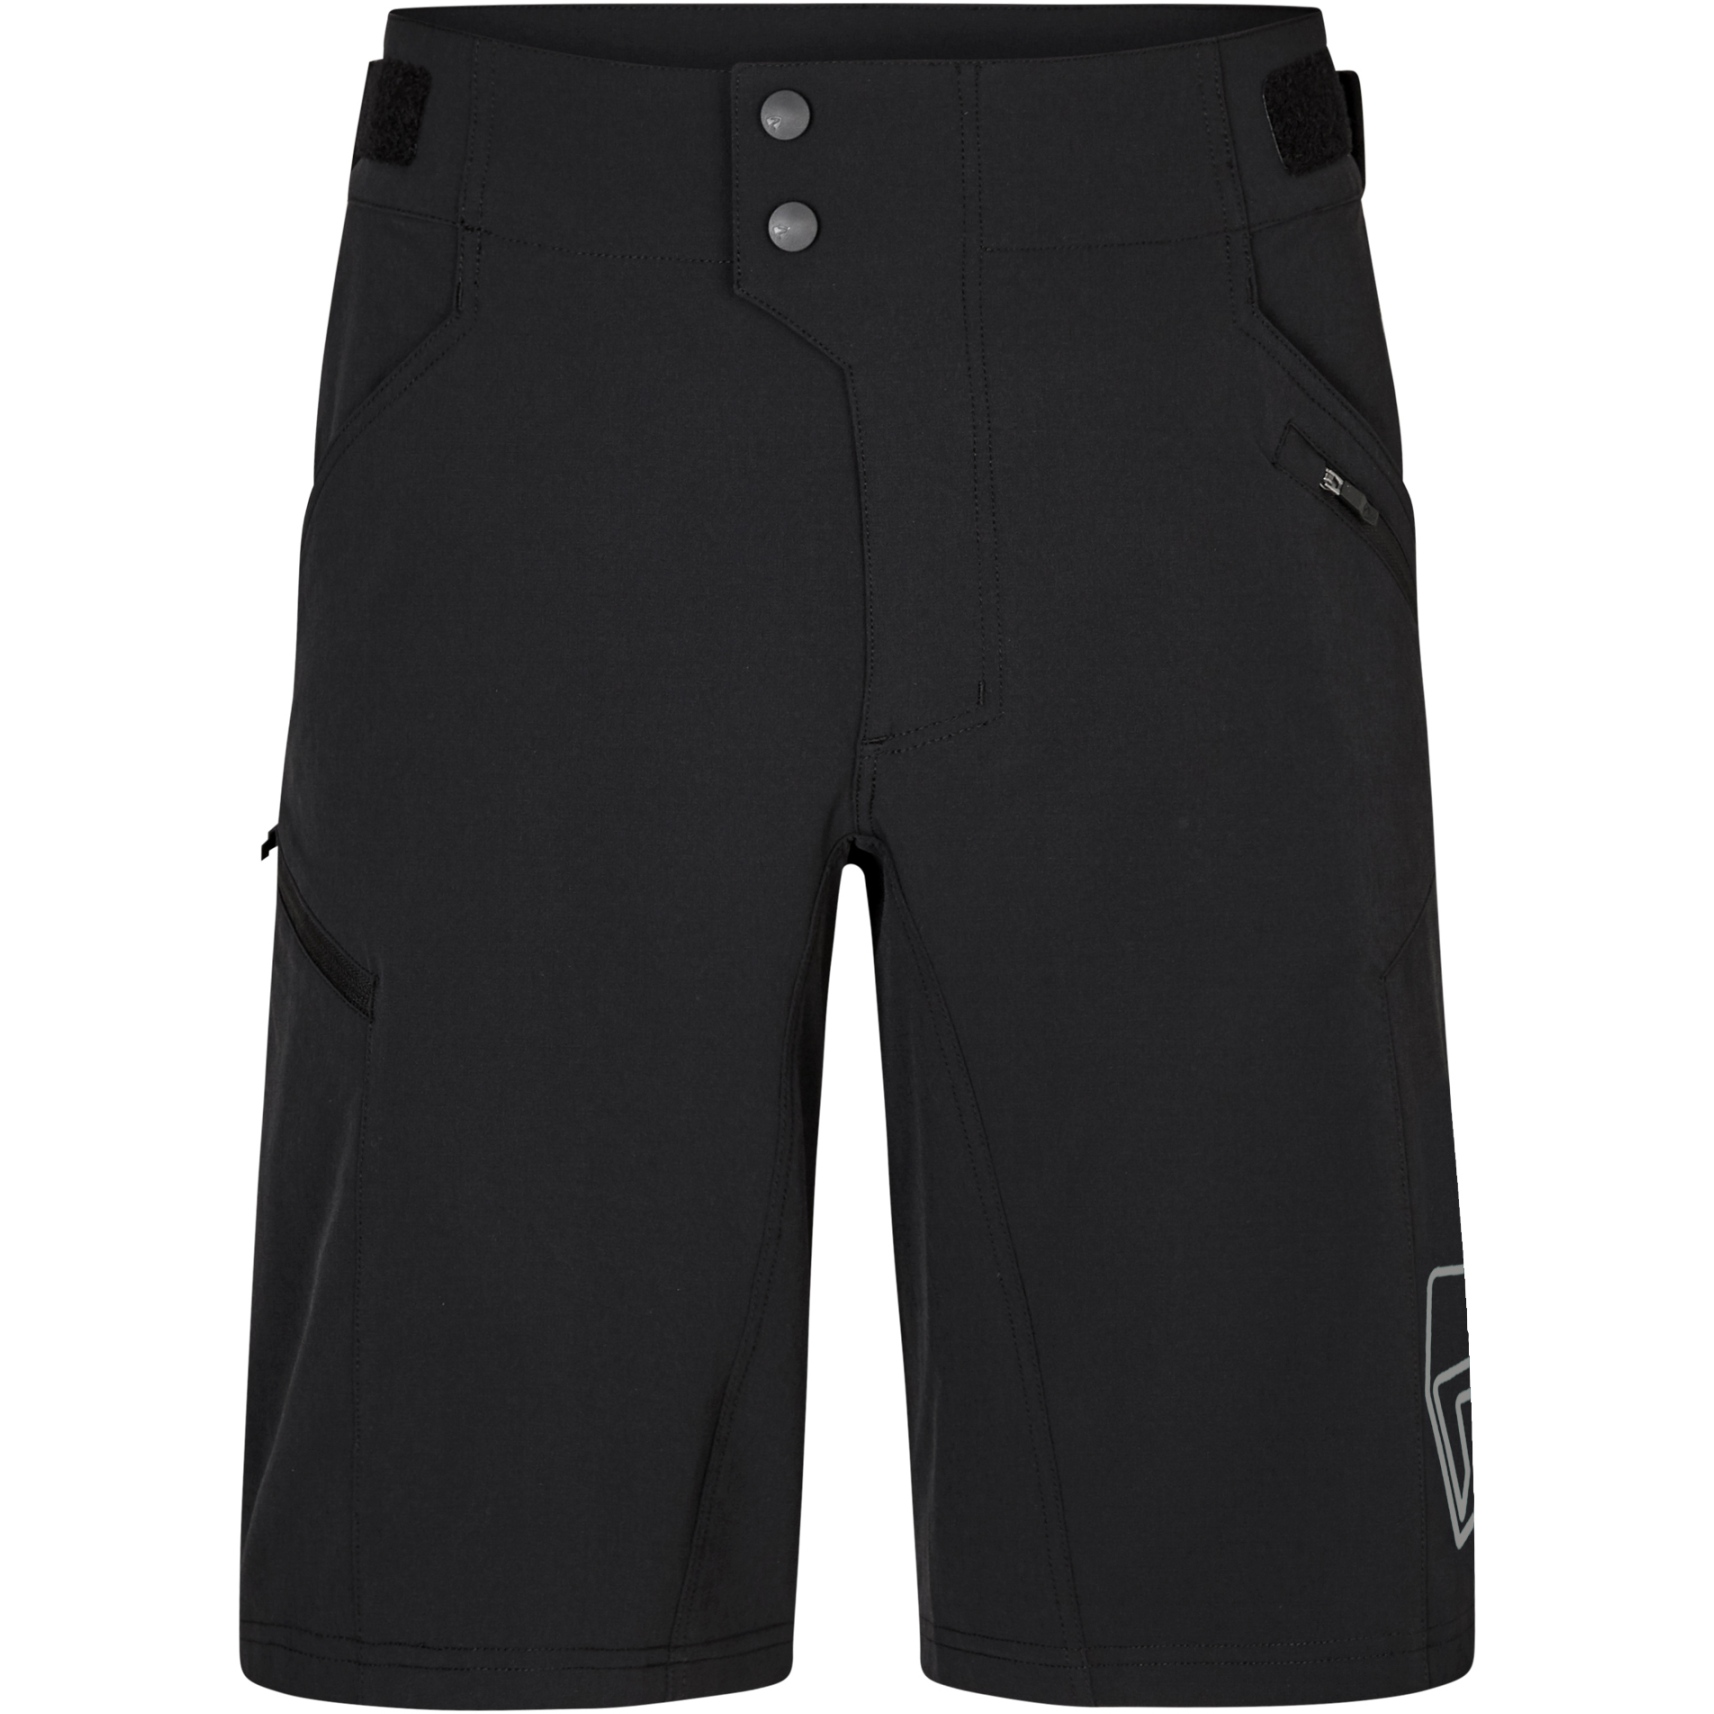 Productfoto van Ziener Nonus X-Function Shorts - zwart